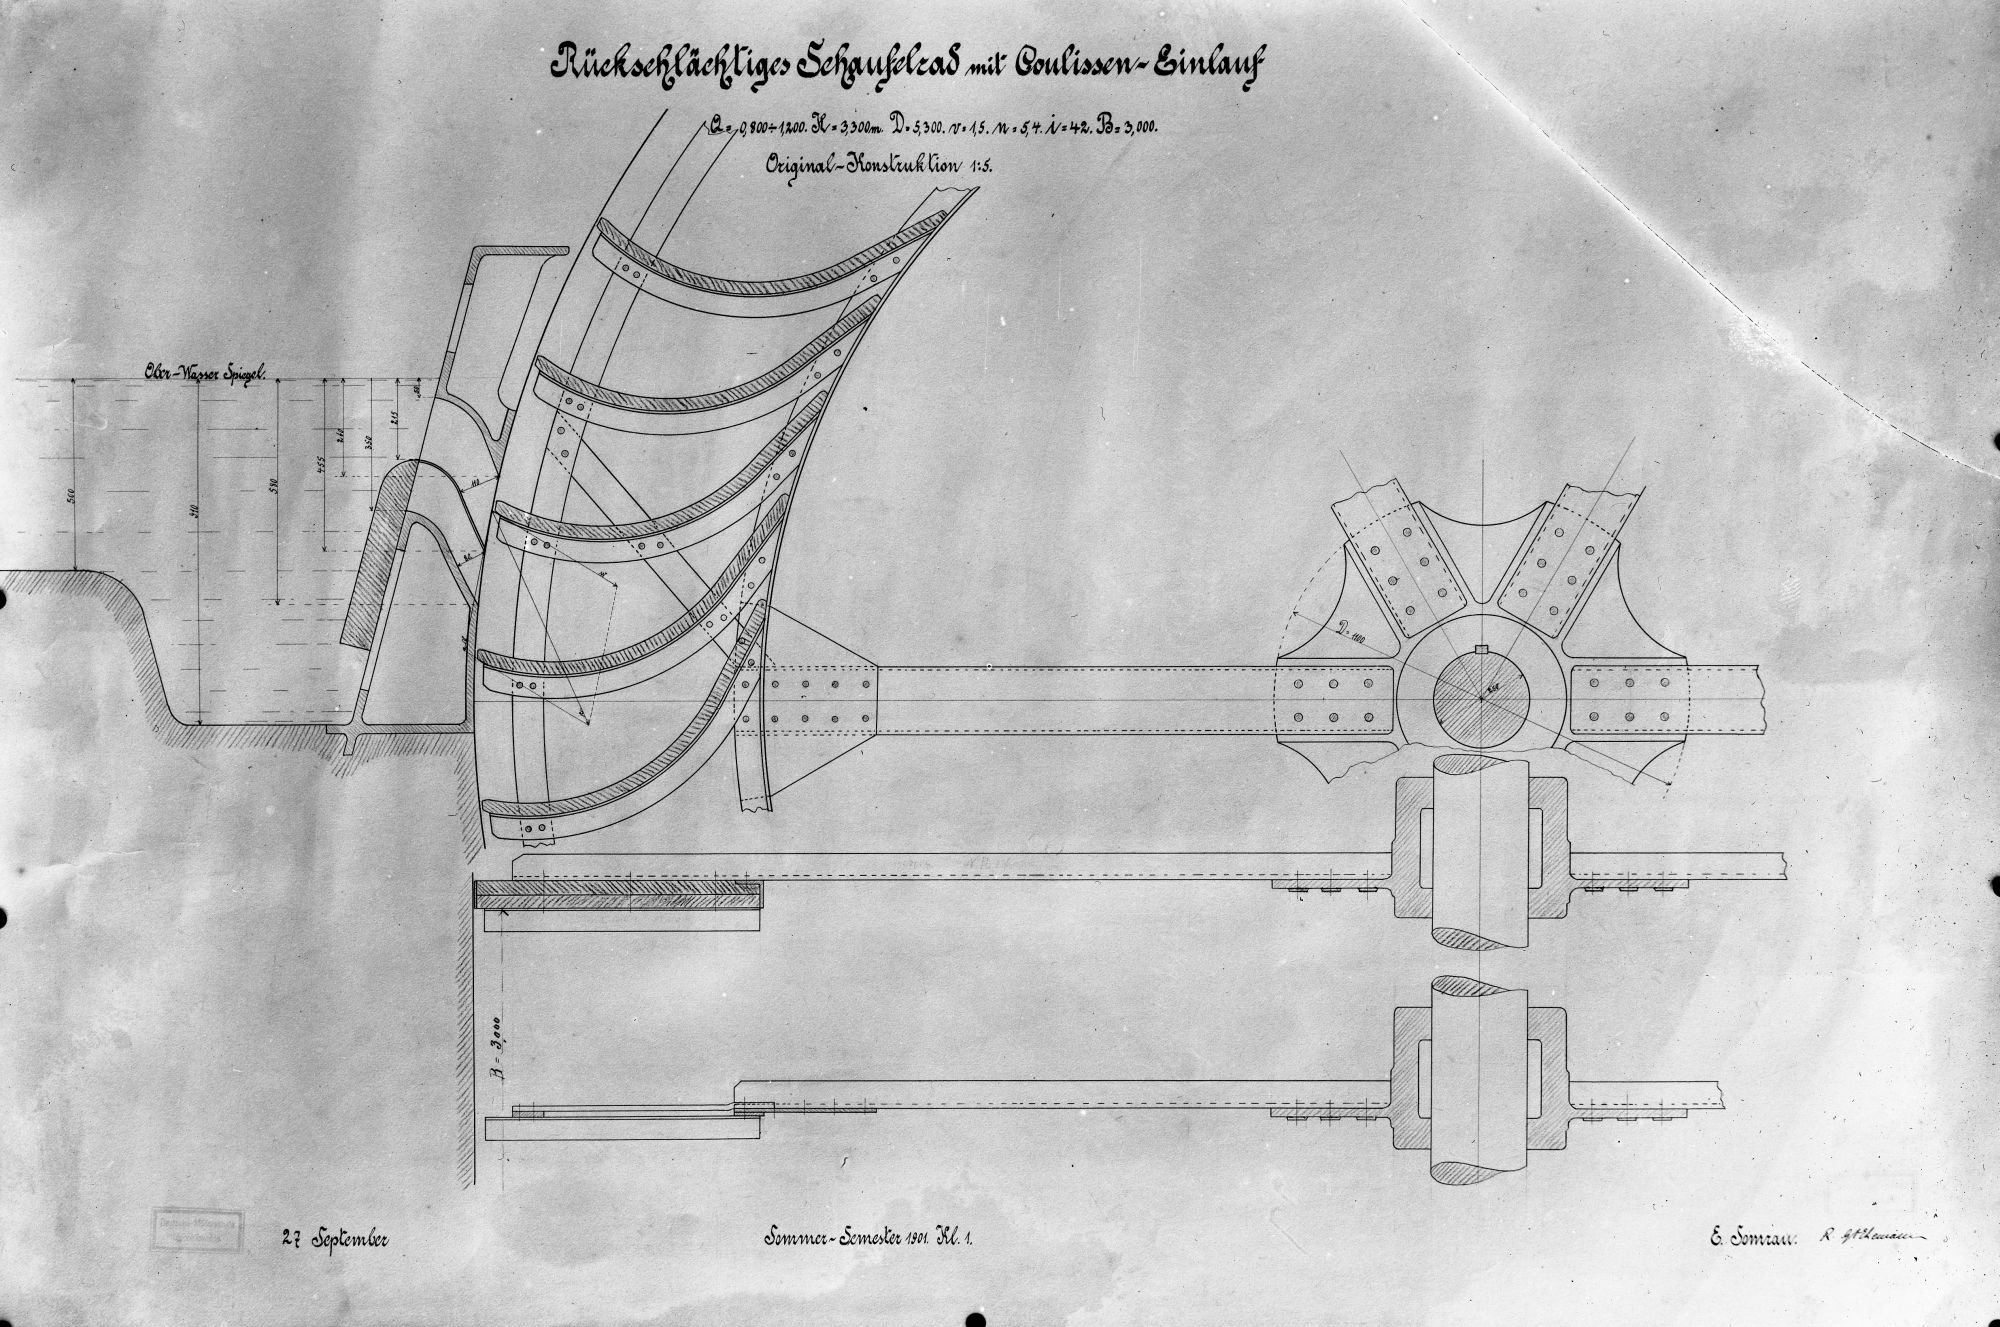 Rückschlächtiges Schaufelrad mit Coulissen-Einlauf (Kulisseneinlauf) (Historische Mühle von Sanssouci CC BY-NC-SA)